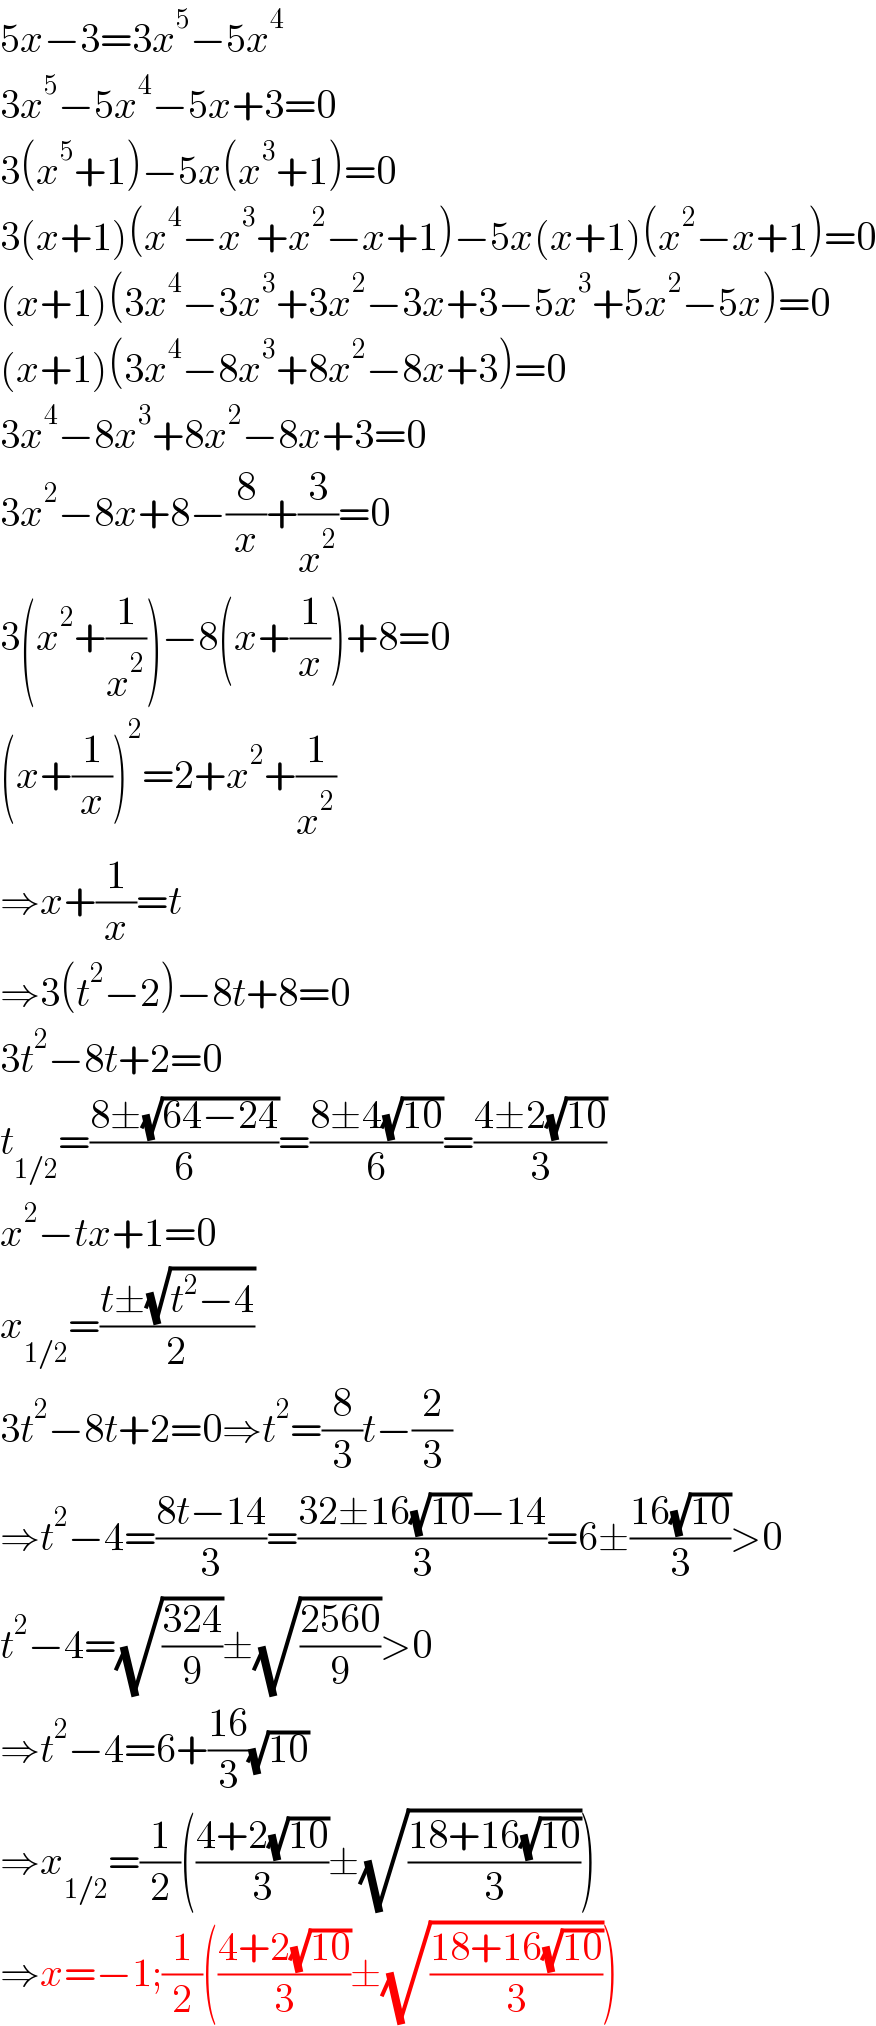 5x−3=3x^5 −5x^4   3x^5 −5x^4 −5x+3=0  3(x^5 +1)−5x(x^3 +1)=0  3(x+1)(x^4 −x^3 +x^2 −x+1)−5x(x+1)(x^2 −x+1)=0  (x+1)(3x^4 −3x^3 +3x^2 −3x+3−5x^3 +5x^2 −5x)=0  (x+1)(3x^4 −8x^3 +8x^2 −8x+3)=0  3x^4 −8x^3 +8x^2 −8x+3=0  3x^2 −8x+8−(8/x)+(3/x^2 )=0  3(x^2 +(1/x^2 ))−8(x+(1/x))+8=0  (x+(1/x))^2 =2+x^2 +(1/x^2 )  ⇒x+(1/x)=t  ⇒3(t^2 −2)−8t+8=0  3t^2 −8t+2=0  t_(1/2) =((8±(√(64−24)))/6)=((8±4(√(10)))/6)=((4±2(√(10)))/3)  x^2 −tx+1=0  x_(1/2) =((t±(√(t^2 −4)))/2)  3t^2 −8t+2=0⇒t^2 =(8/3)t−(2/3)  ⇒t^2 −4=((8t−14)/3)=((32±16(√(10))−14)/3)=6±((16(√(10)))/3)>0  t^2 −4=(√((324)/9))±(√((2560)/9))>0  ⇒t^2 −4=6+((16)/3)(√(10))  ⇒x_(1/2) =(1/2)(((4+2(√(10)))/3)±(√((18+16(√(10)))/3)))  ⇒x=−1;(1/2)(((4+2(√(10)))/3)±(√((18+16(√(10)))/3)))  